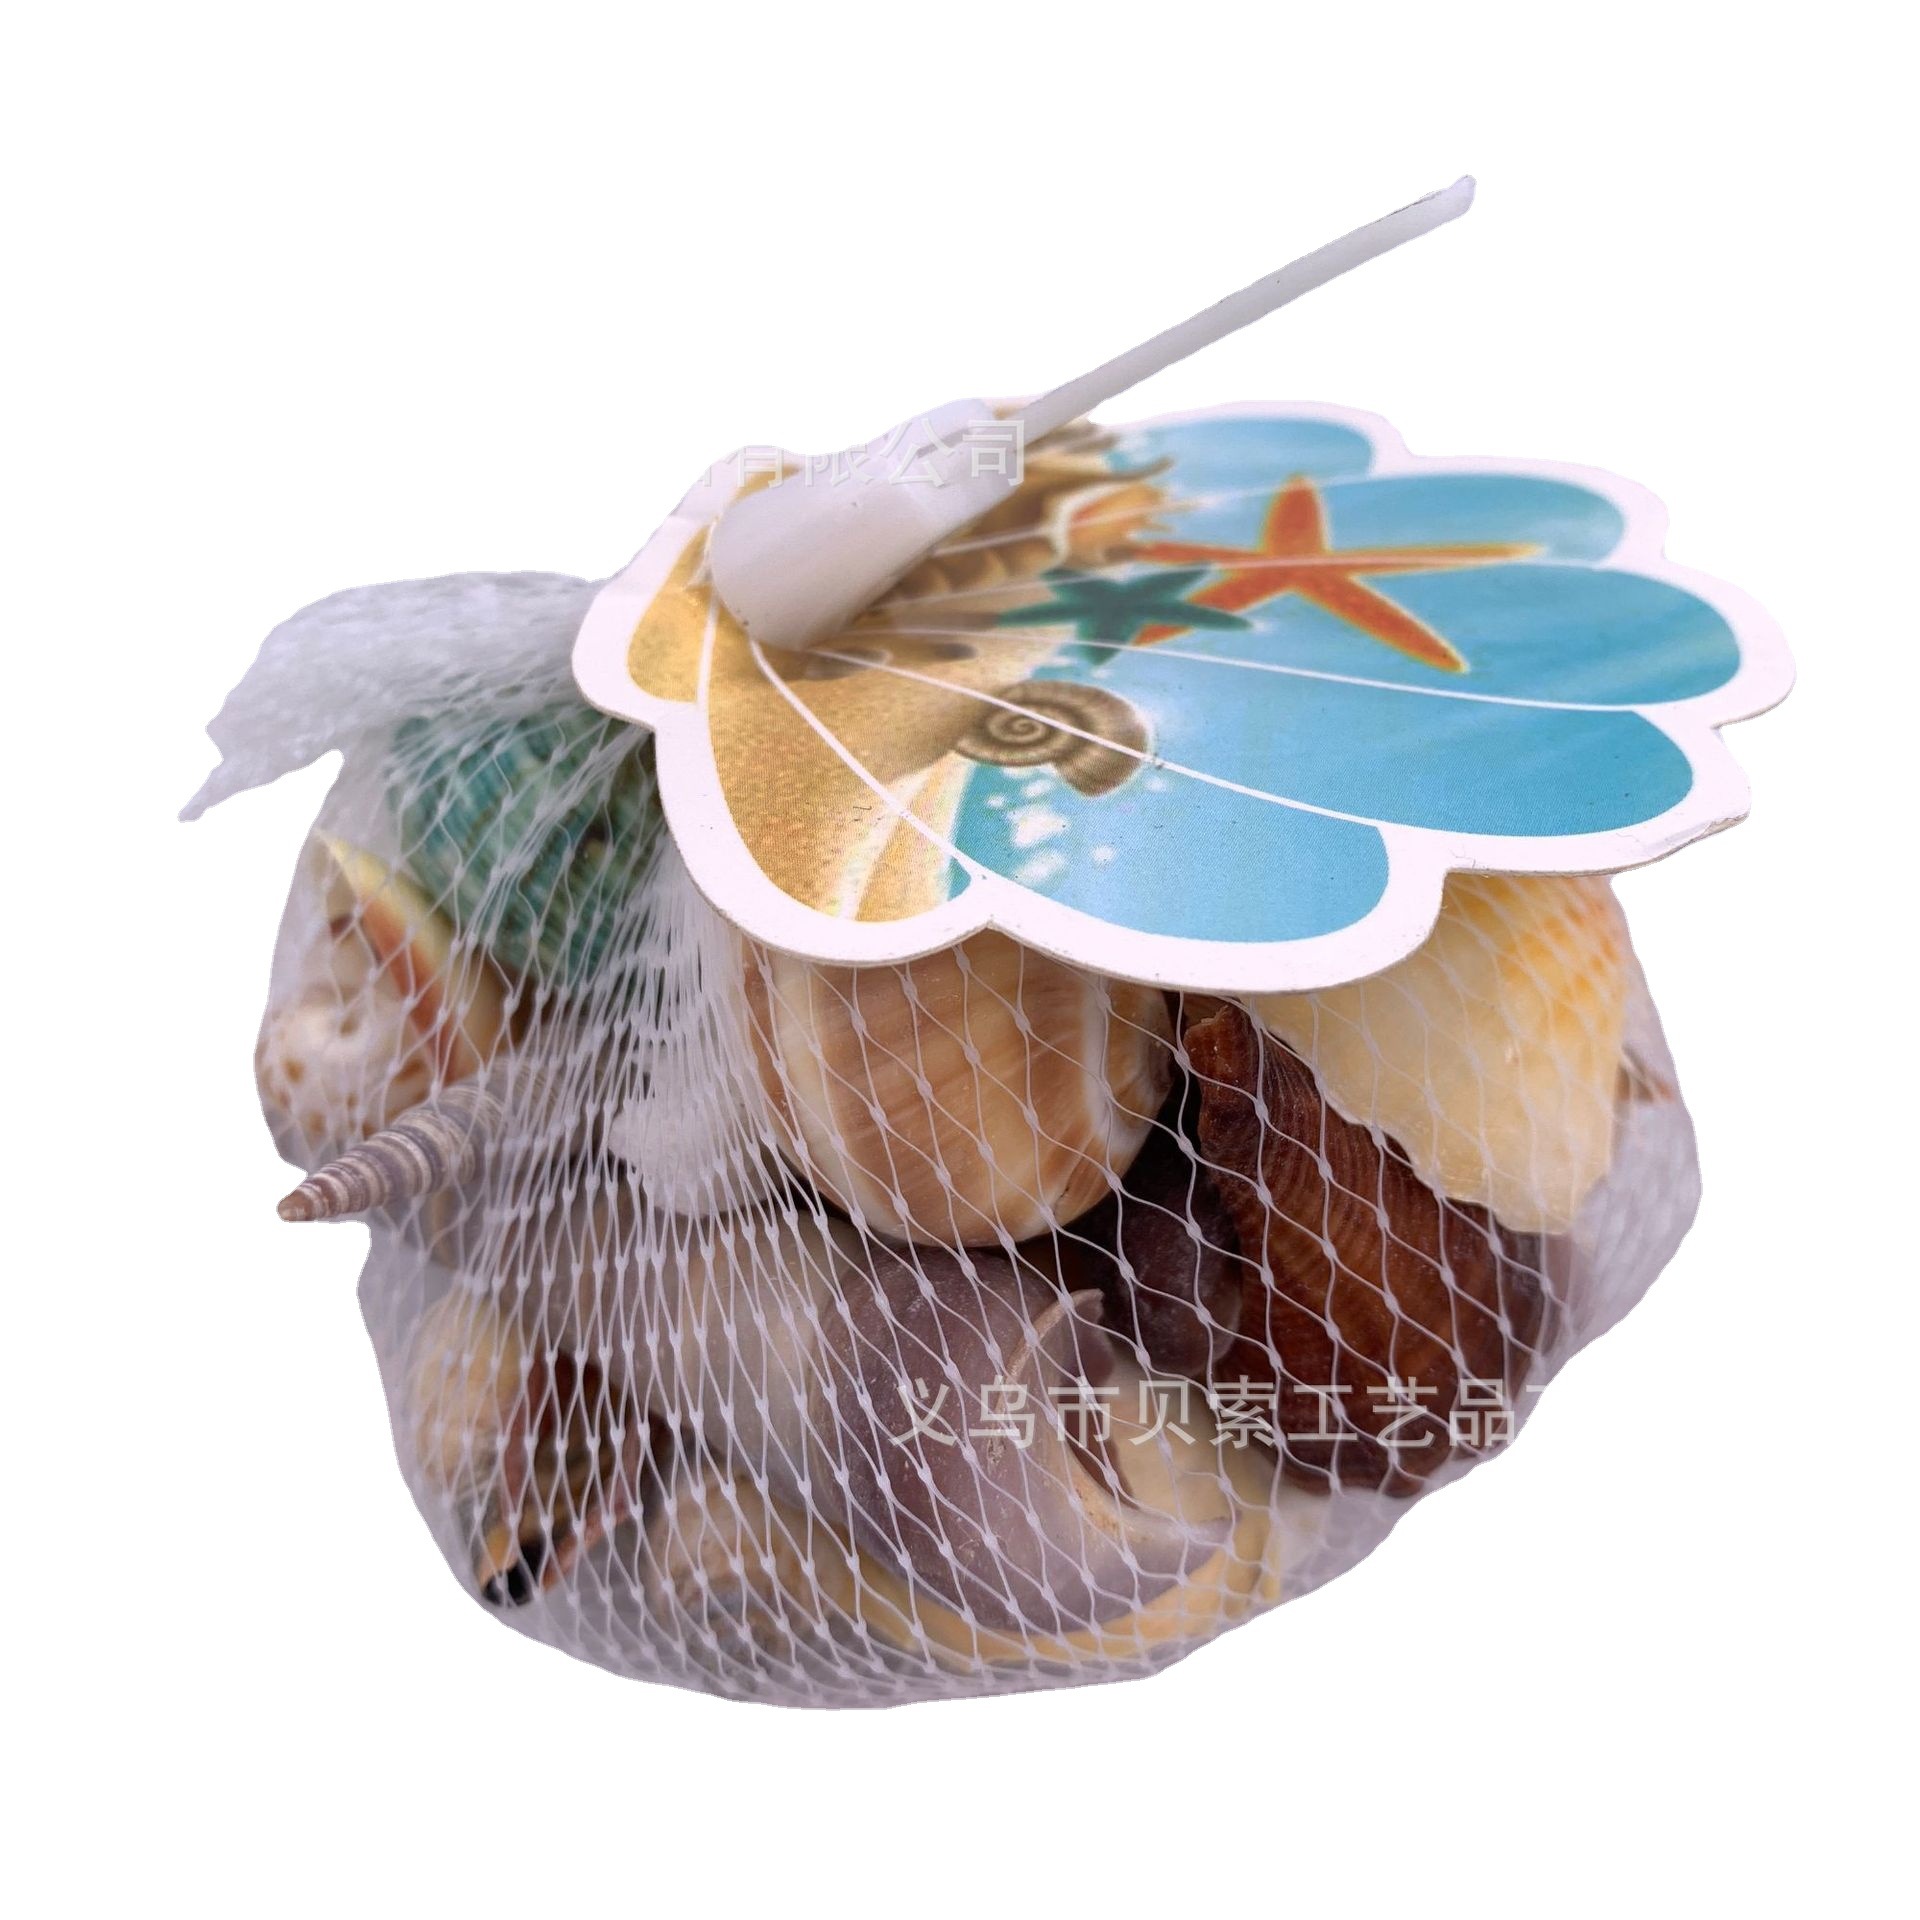 现货天然贝壳海螺海星 鱼缸造景装饰贝壳海螺批发风铃DIY工艺品详情图3